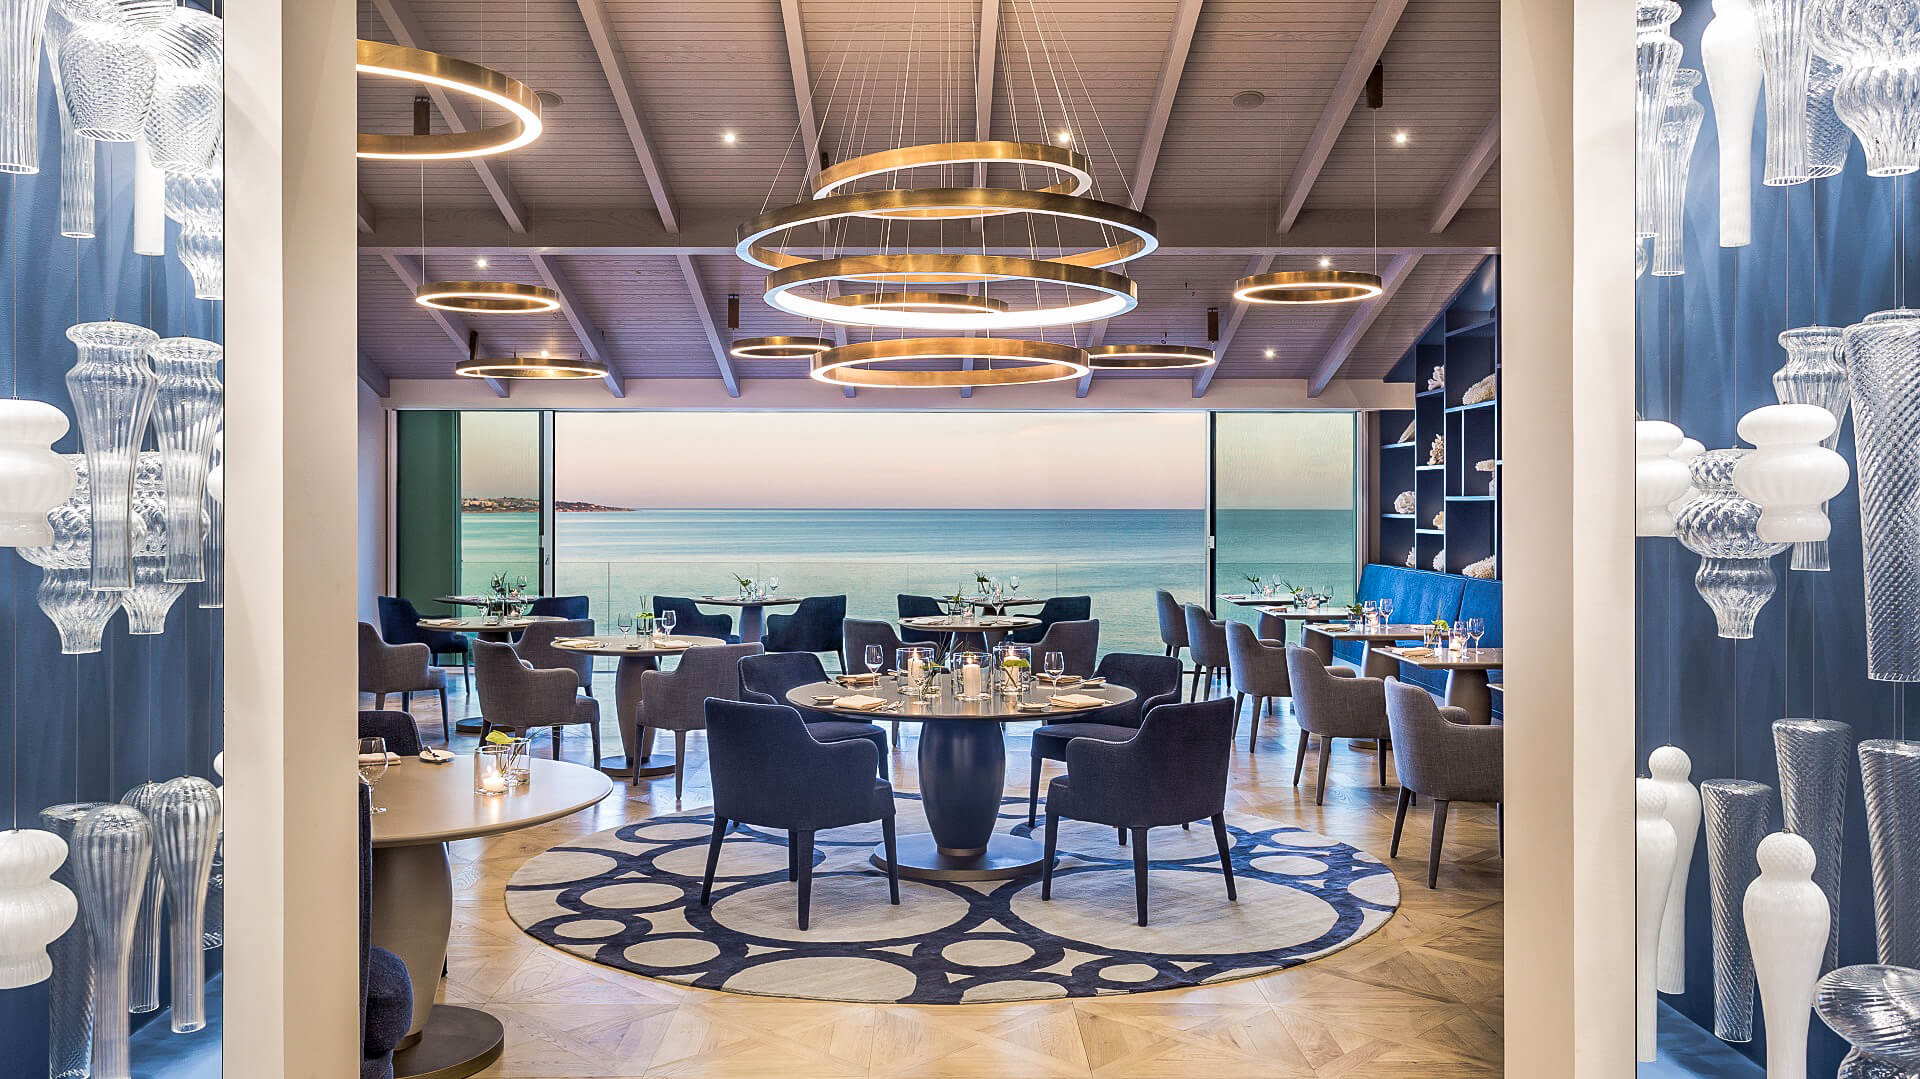 Das Ocean Restaurant ist mit seinem Panorama-Blick über den Atlantik auch optisch ein absolutes Highlight.